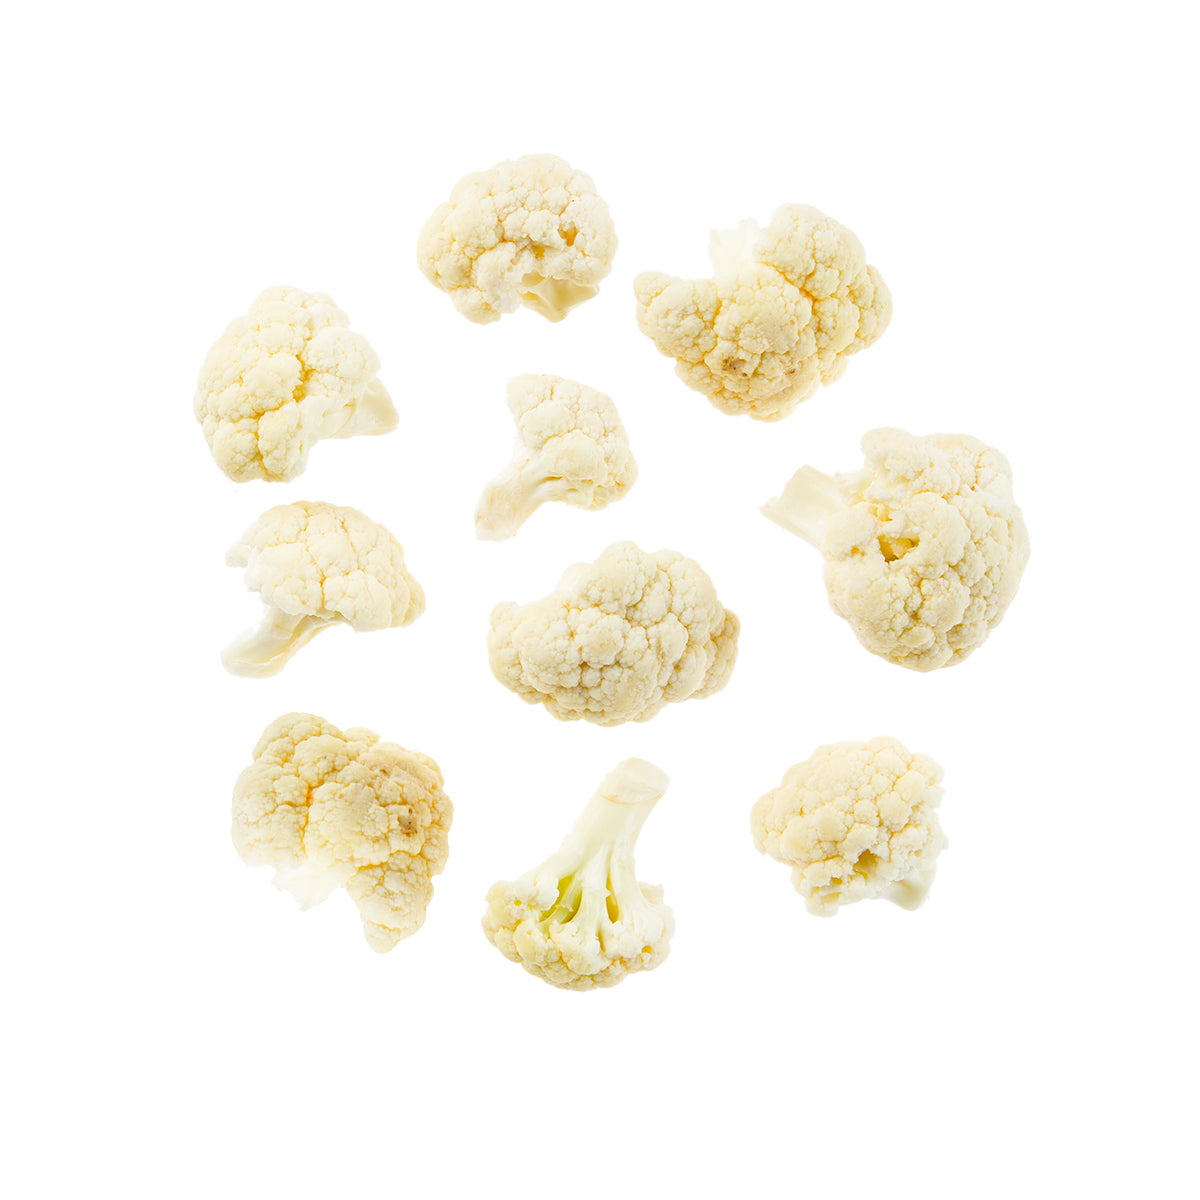 BoxNCase Cauliflower Florets 3 LB